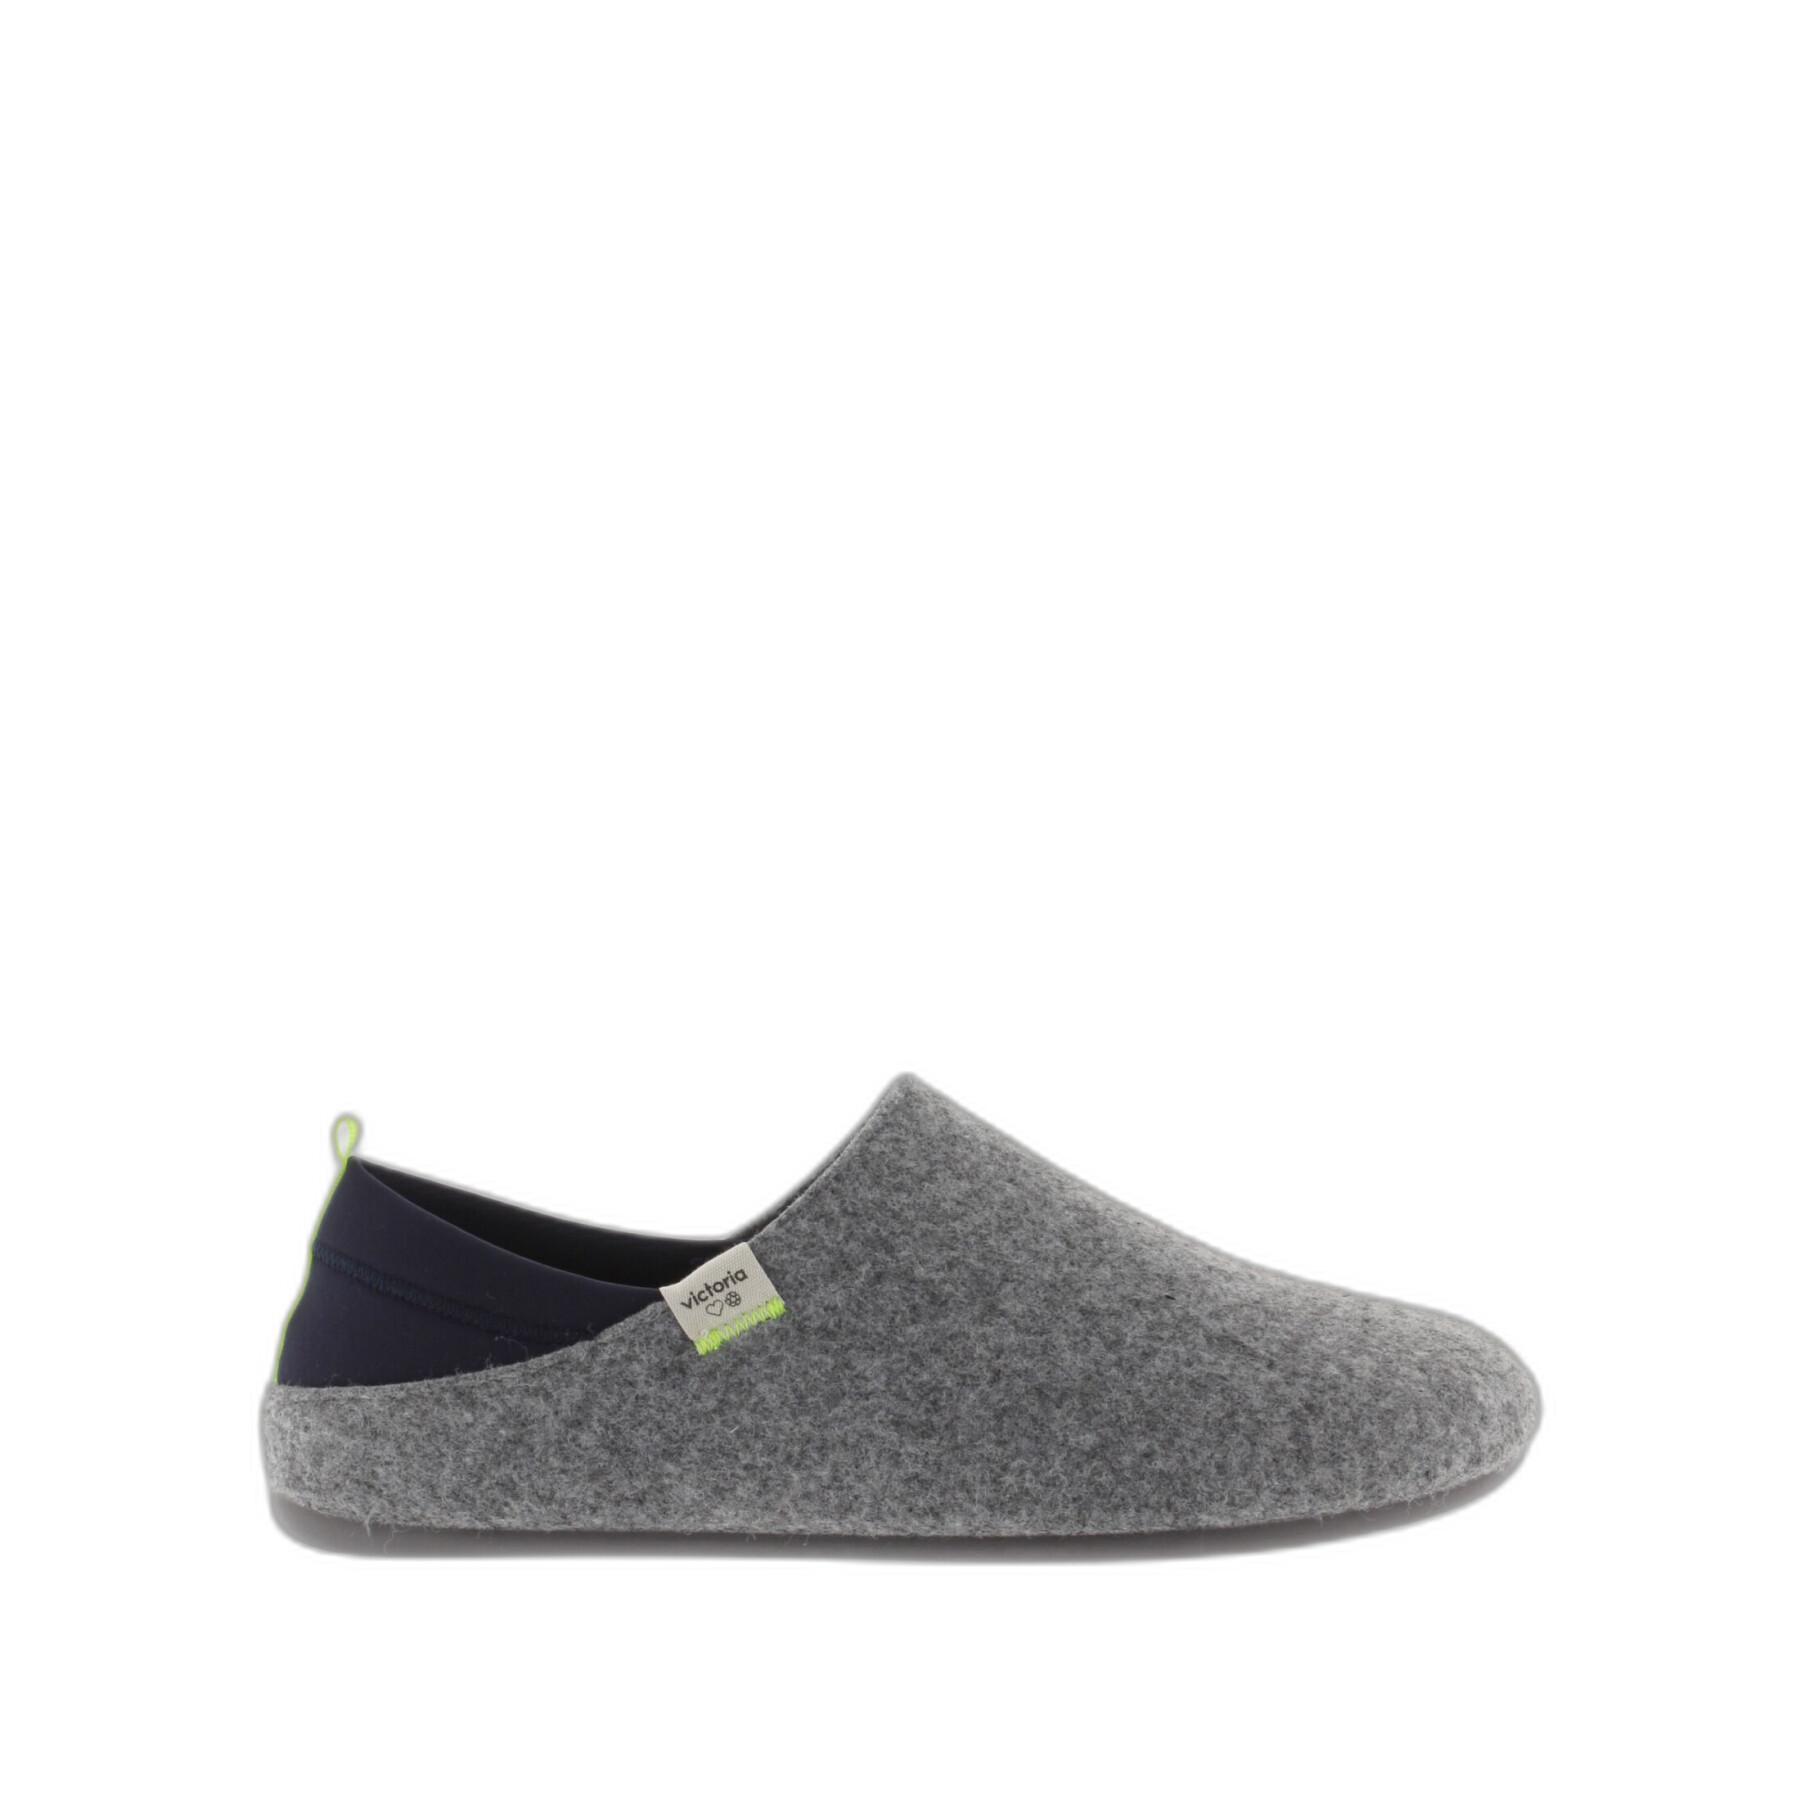 Felt and neoprene slippers for women Victoria Norte